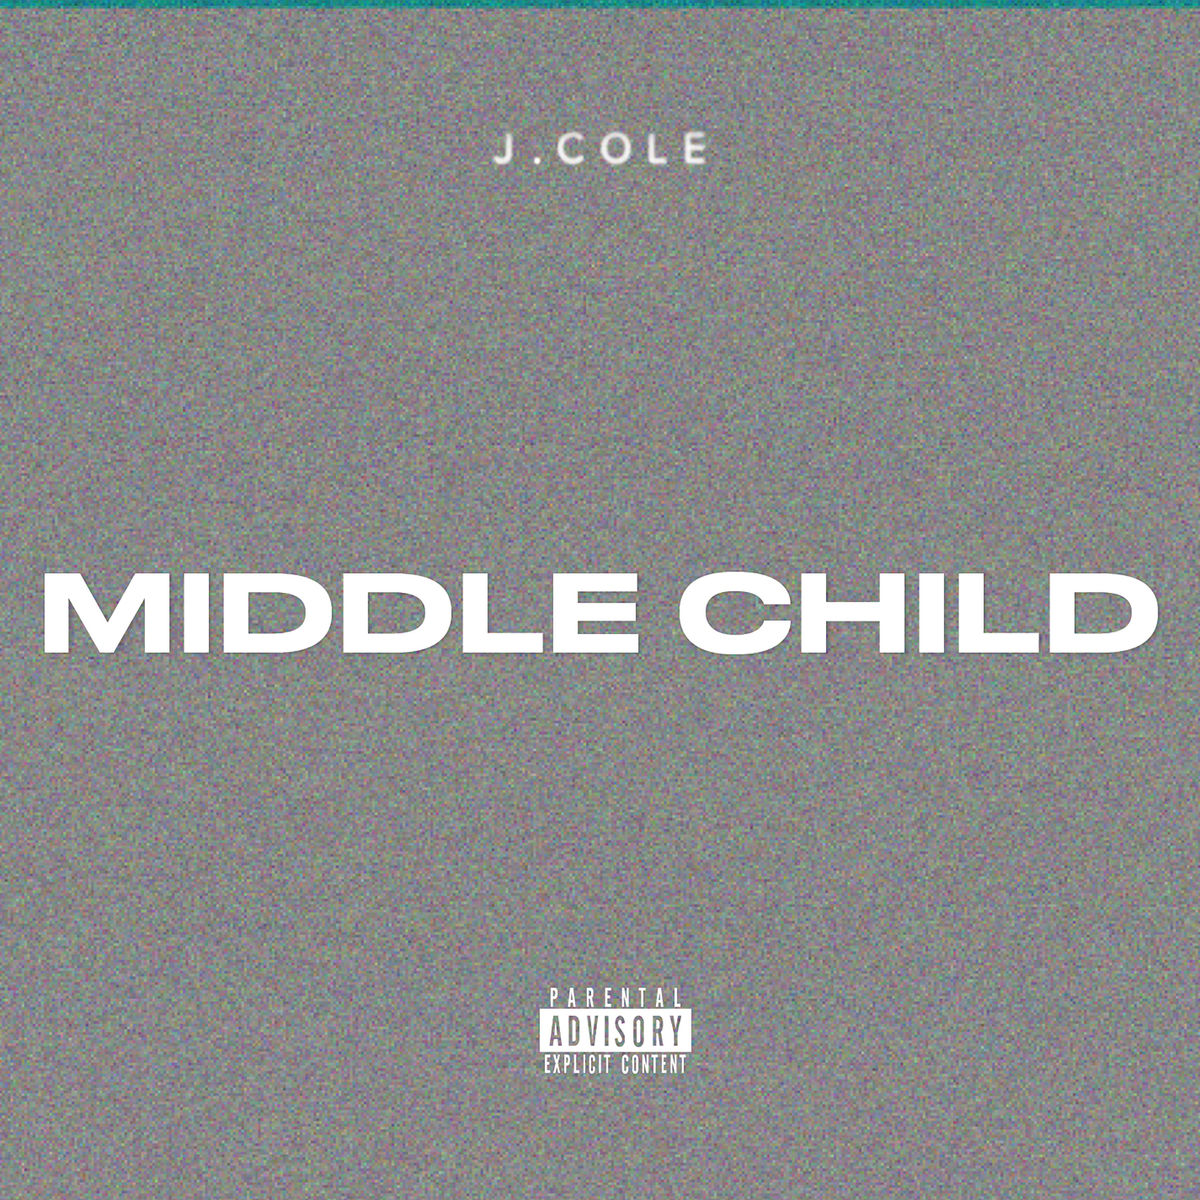 J. Cole “Middle Child” album art